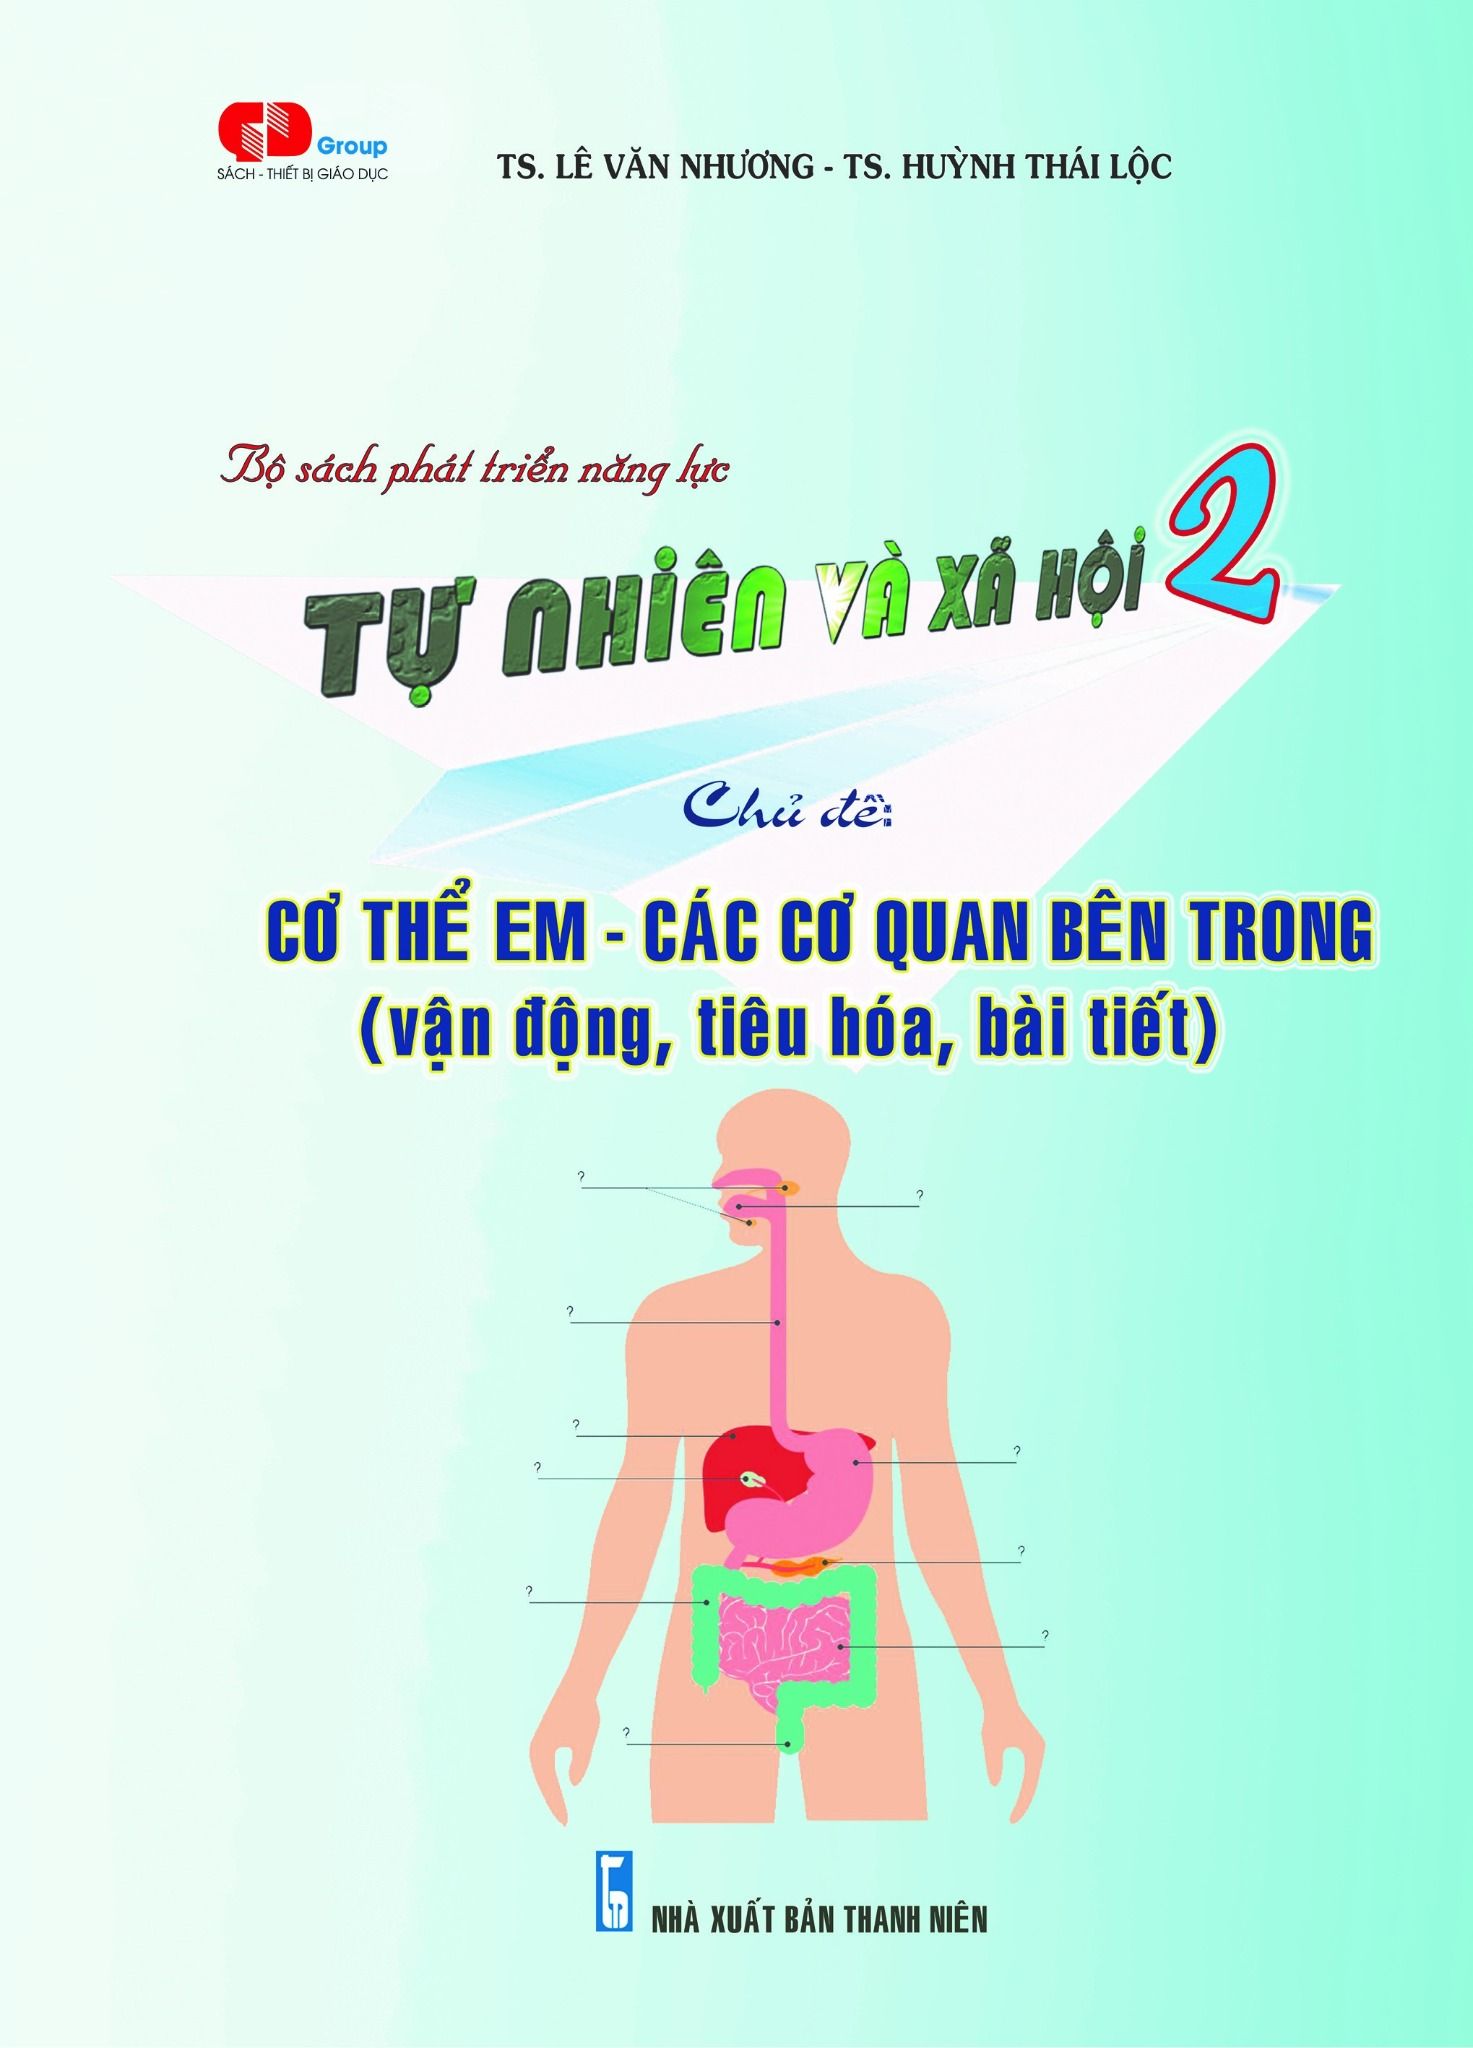  TN&XH 2 - Cơ thể em - các cơ quan bên trong (vận động, tiêu hóa, bài tiết) 